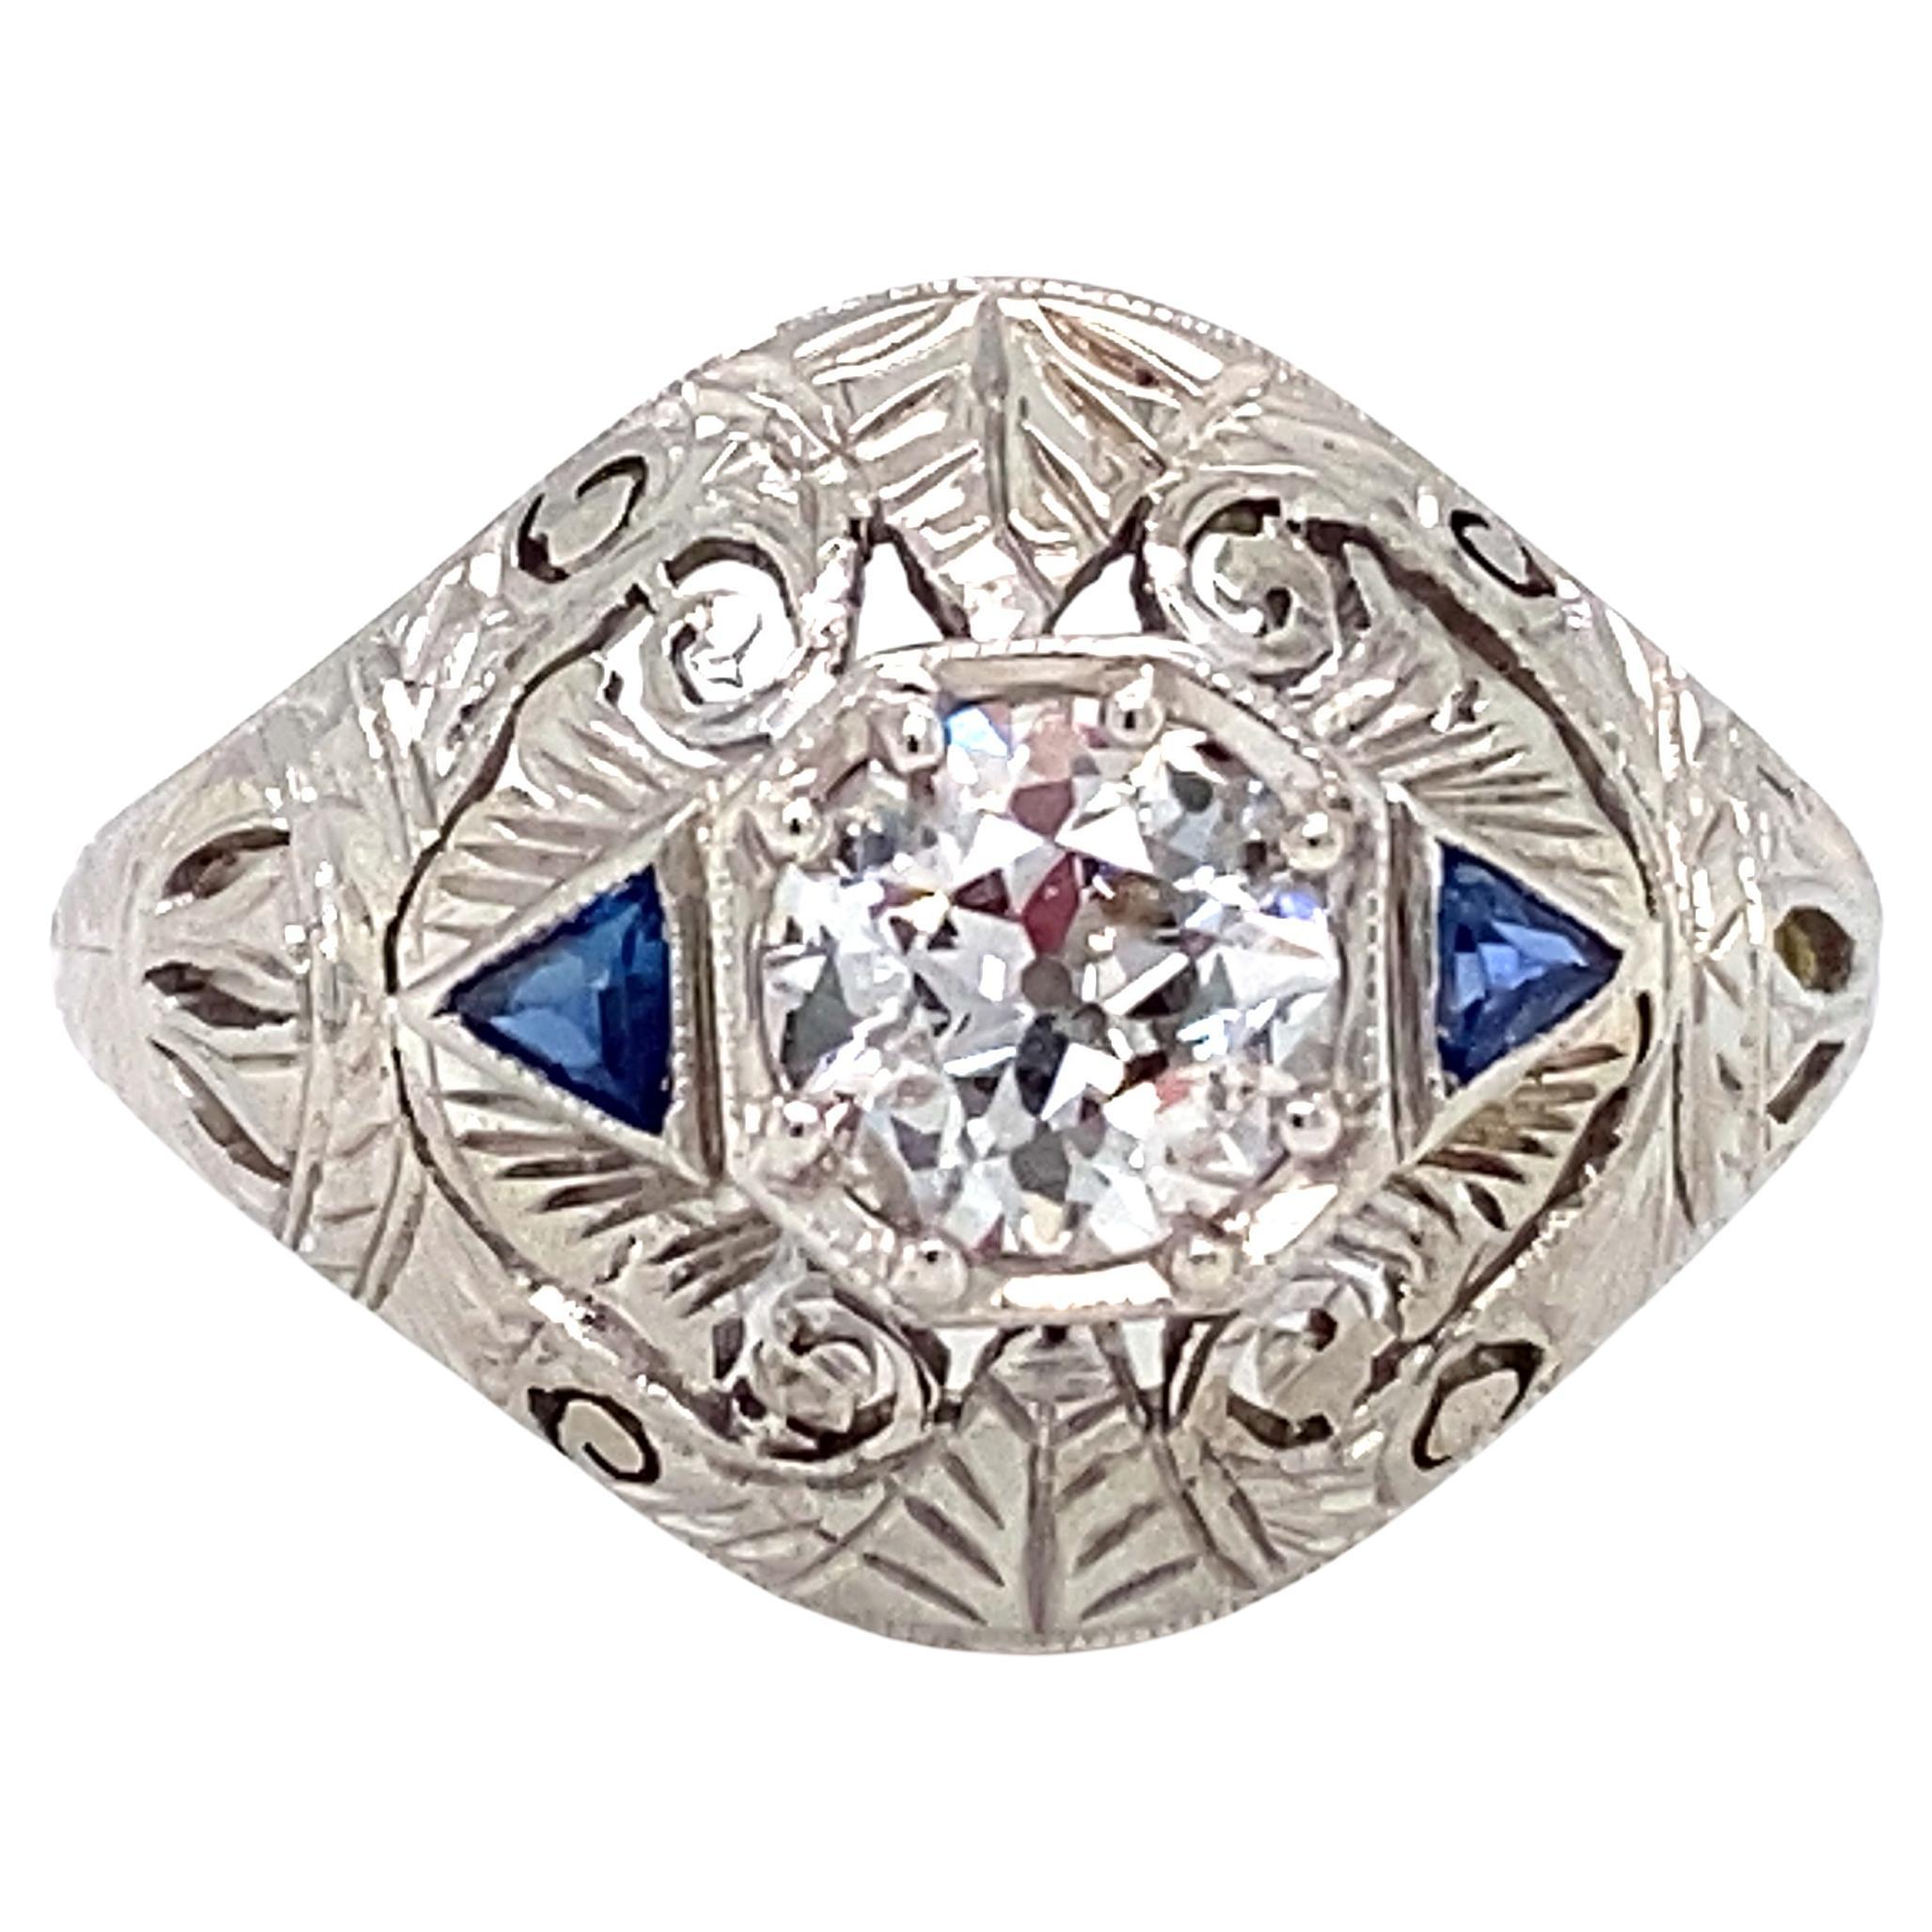 Circa 1920s Art Deco 0.65 Carat Diamond and Sapphire Ring in Platinum